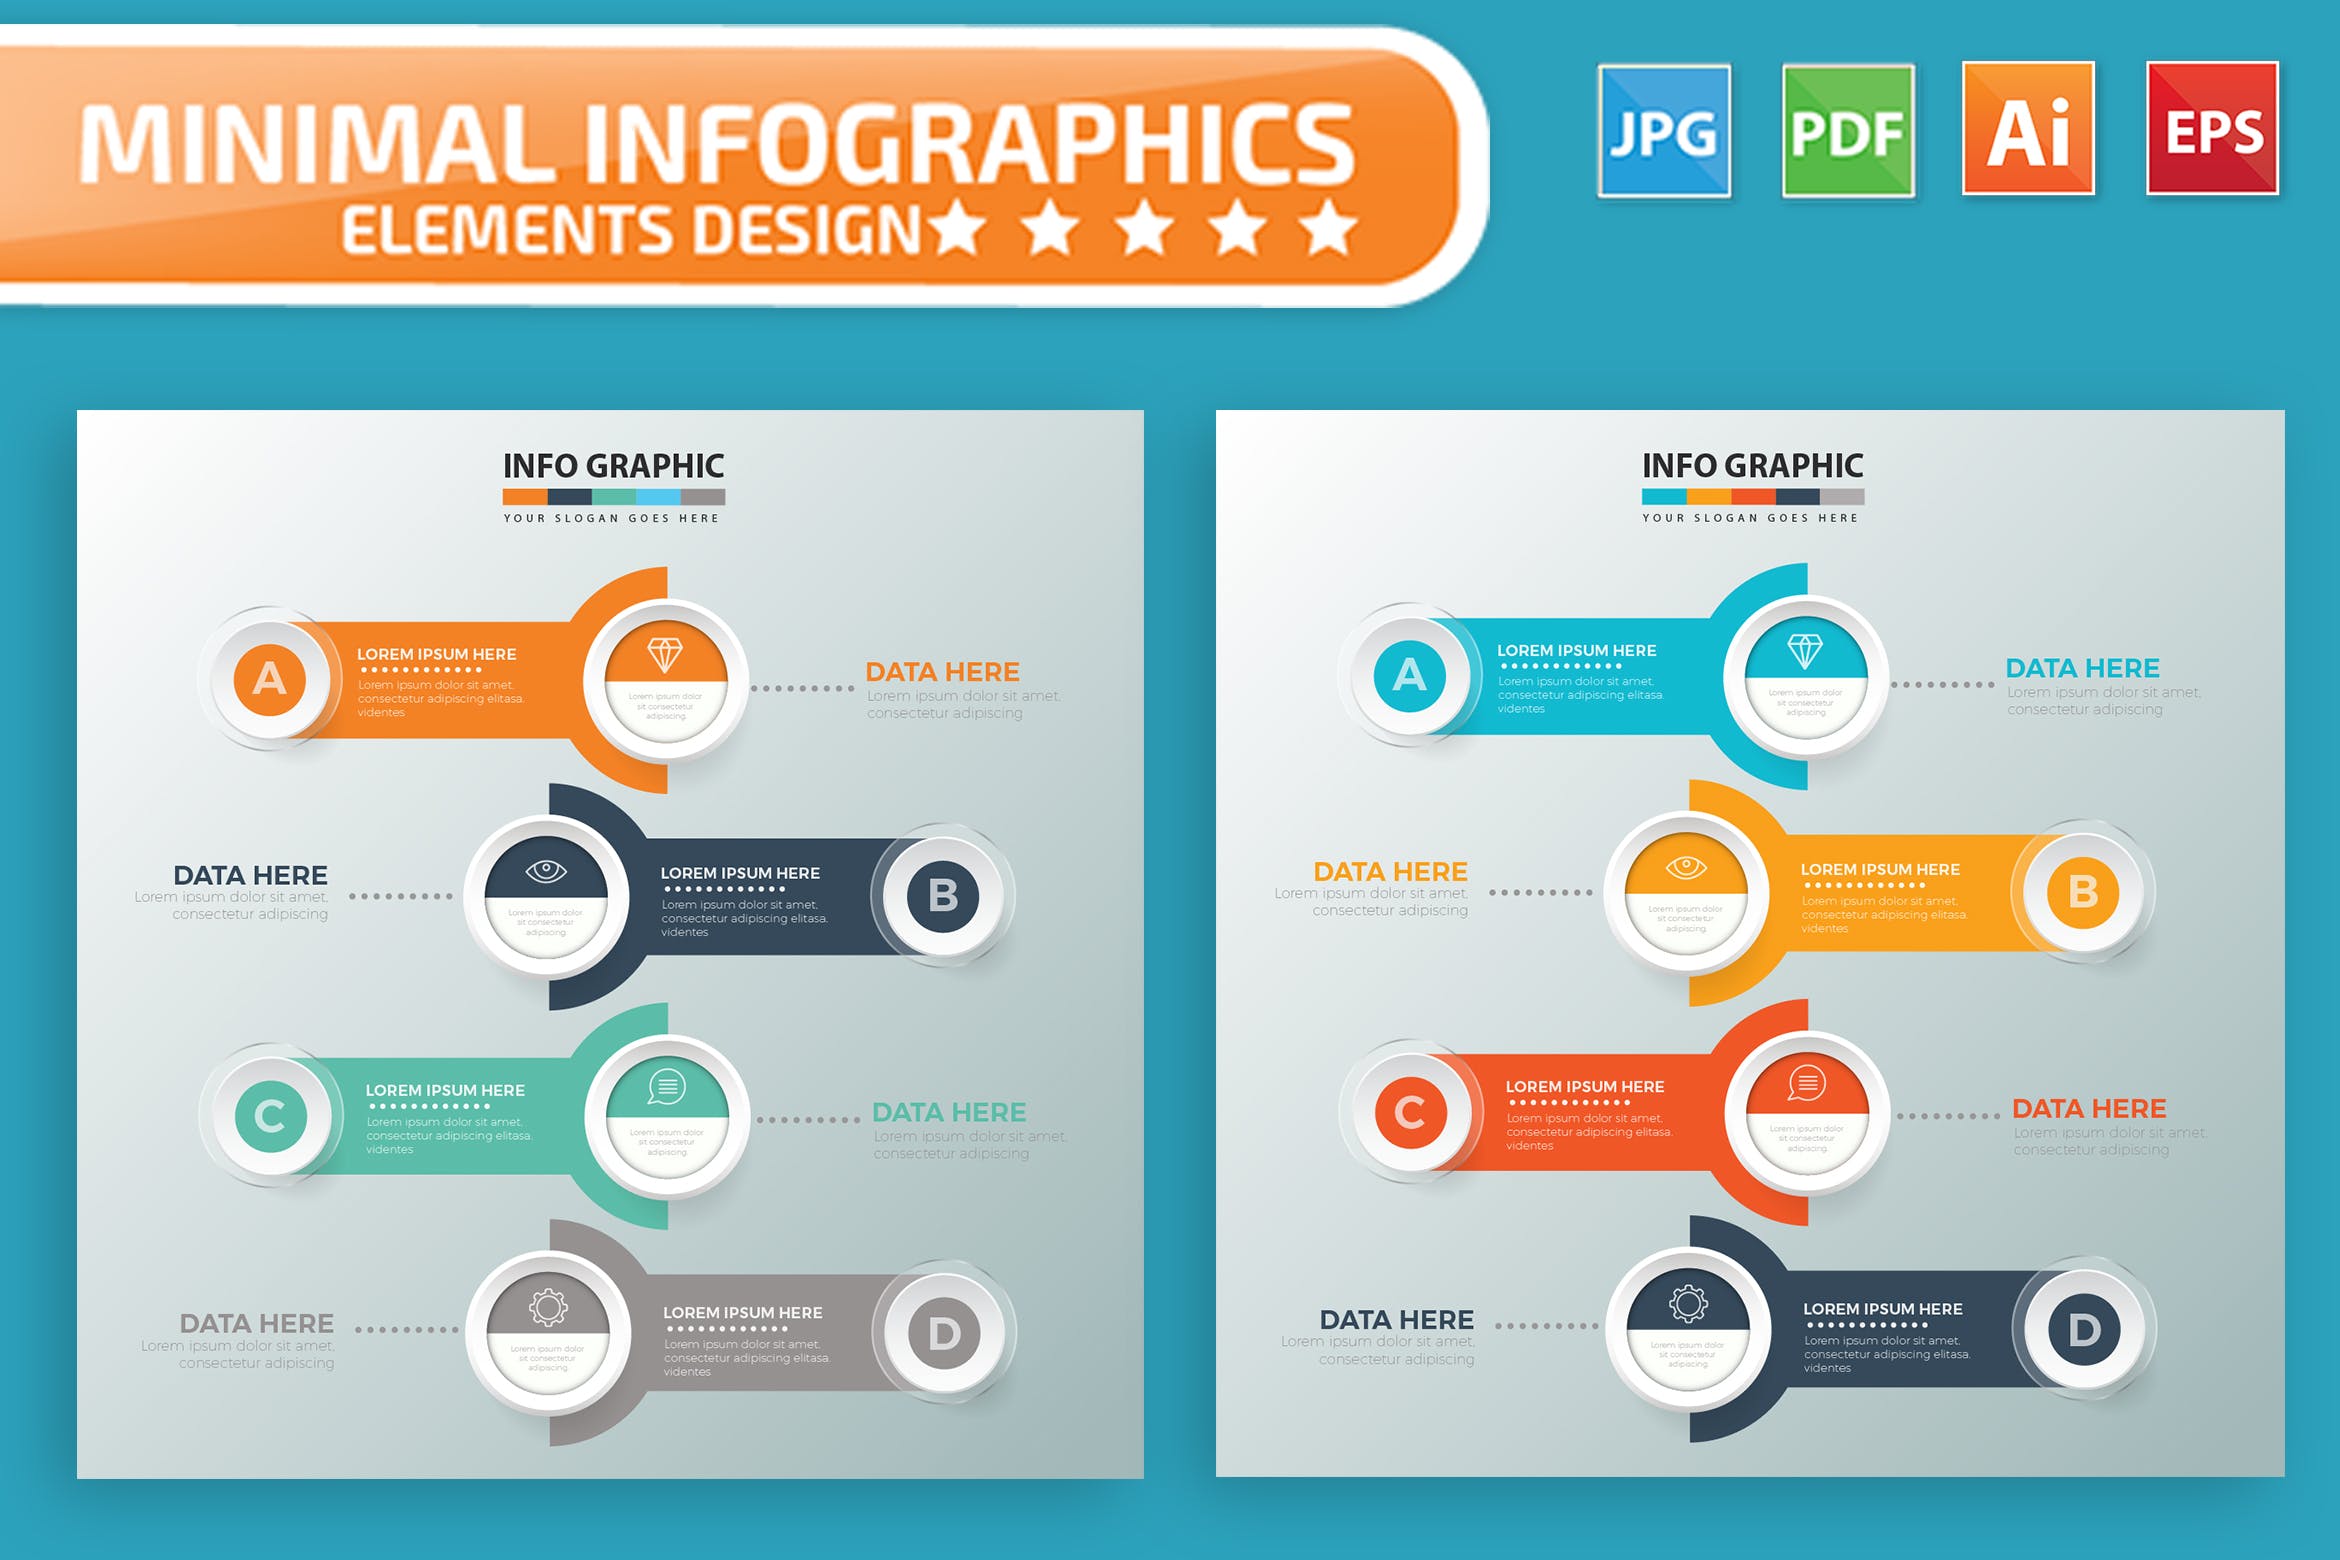 要点说明/重要特征信息图表矢量图形非凡图库精选素材v4 Infographic Elements Design插图